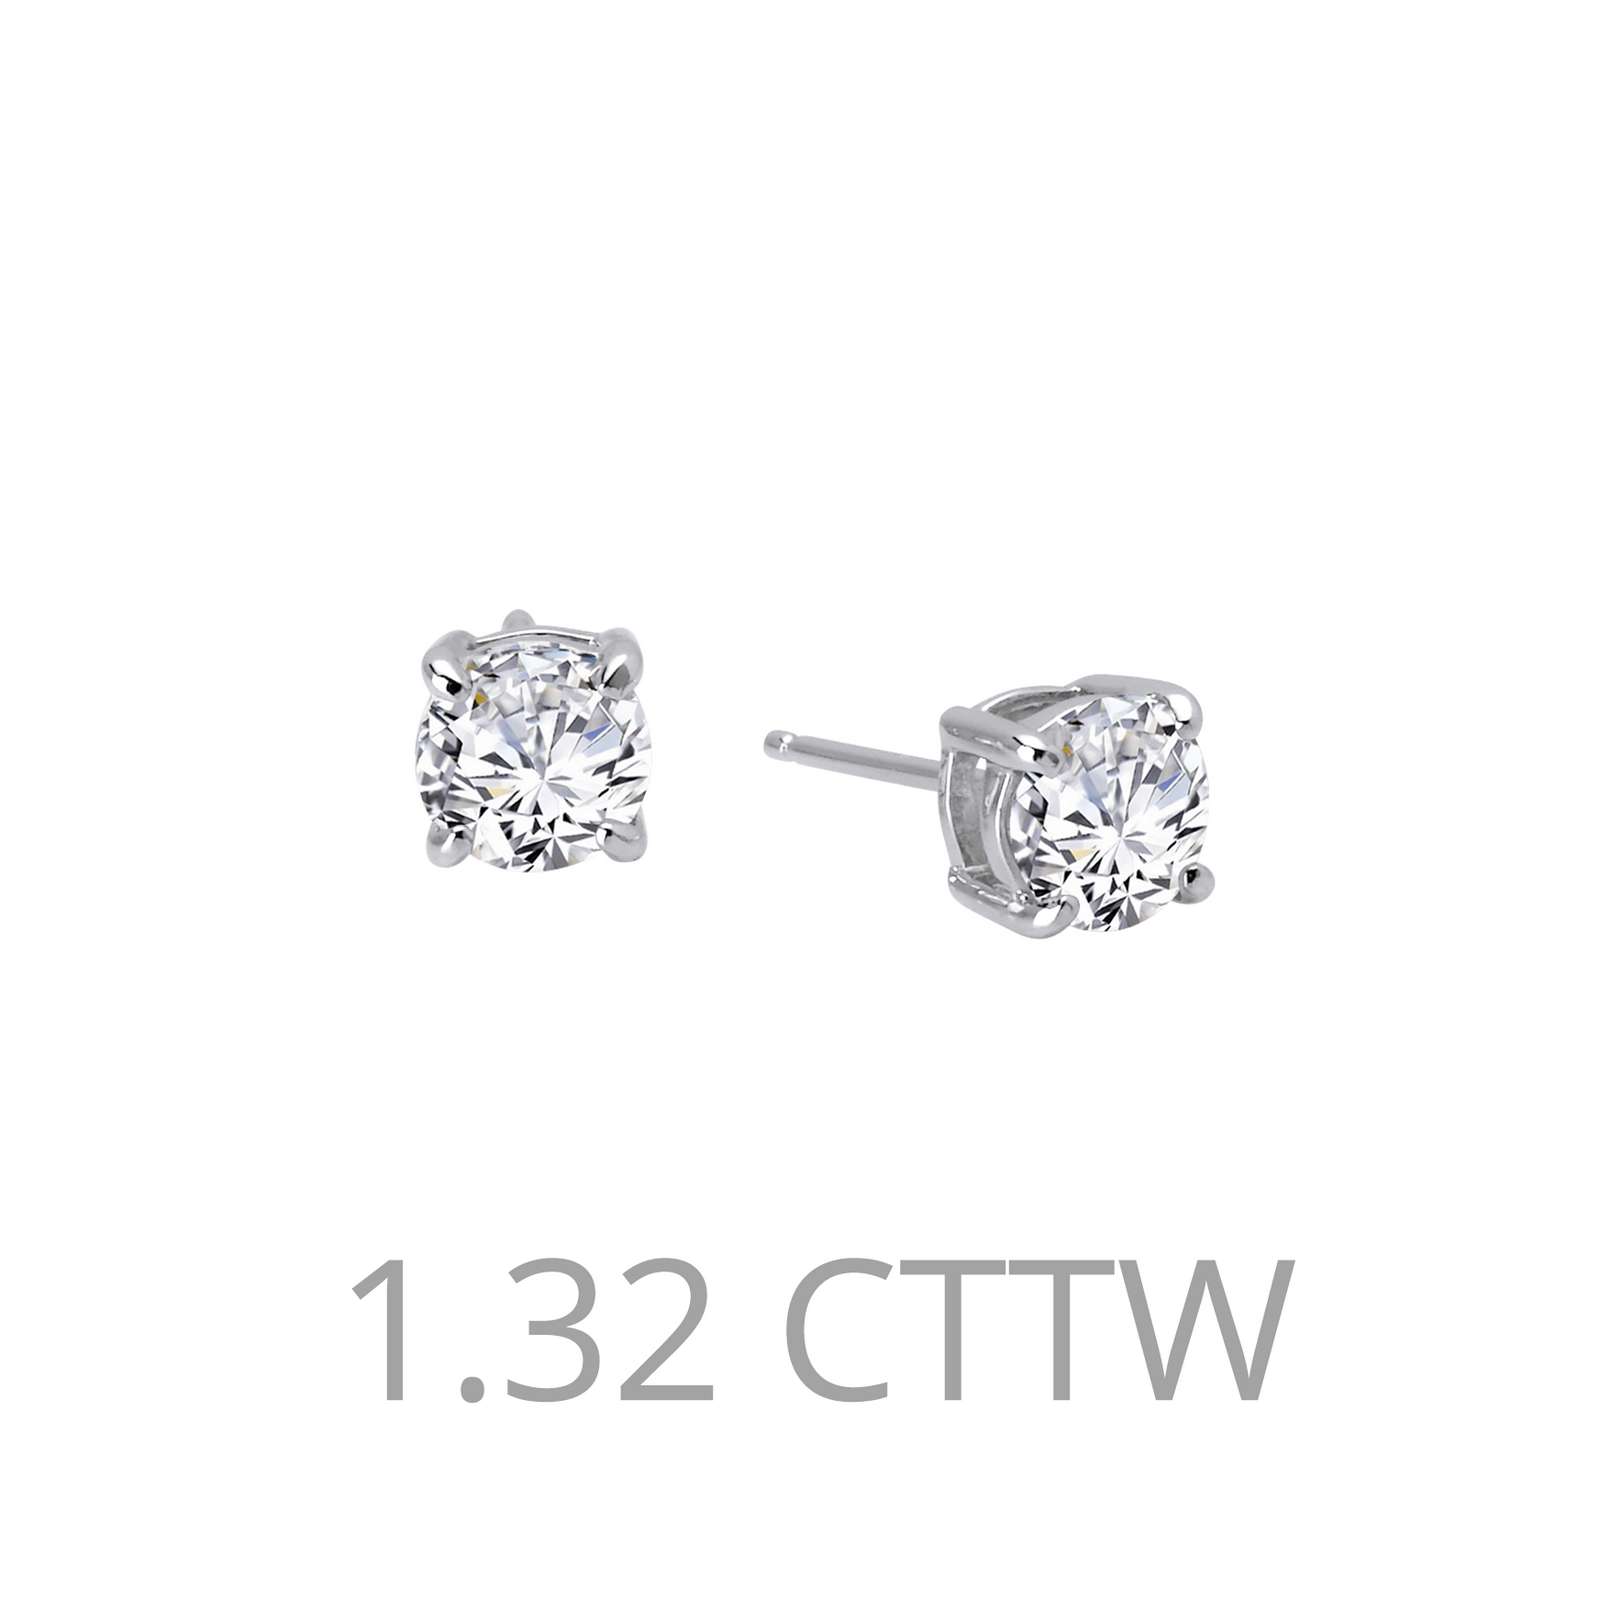 1.32 CTW Stud Earrings by Lafonn